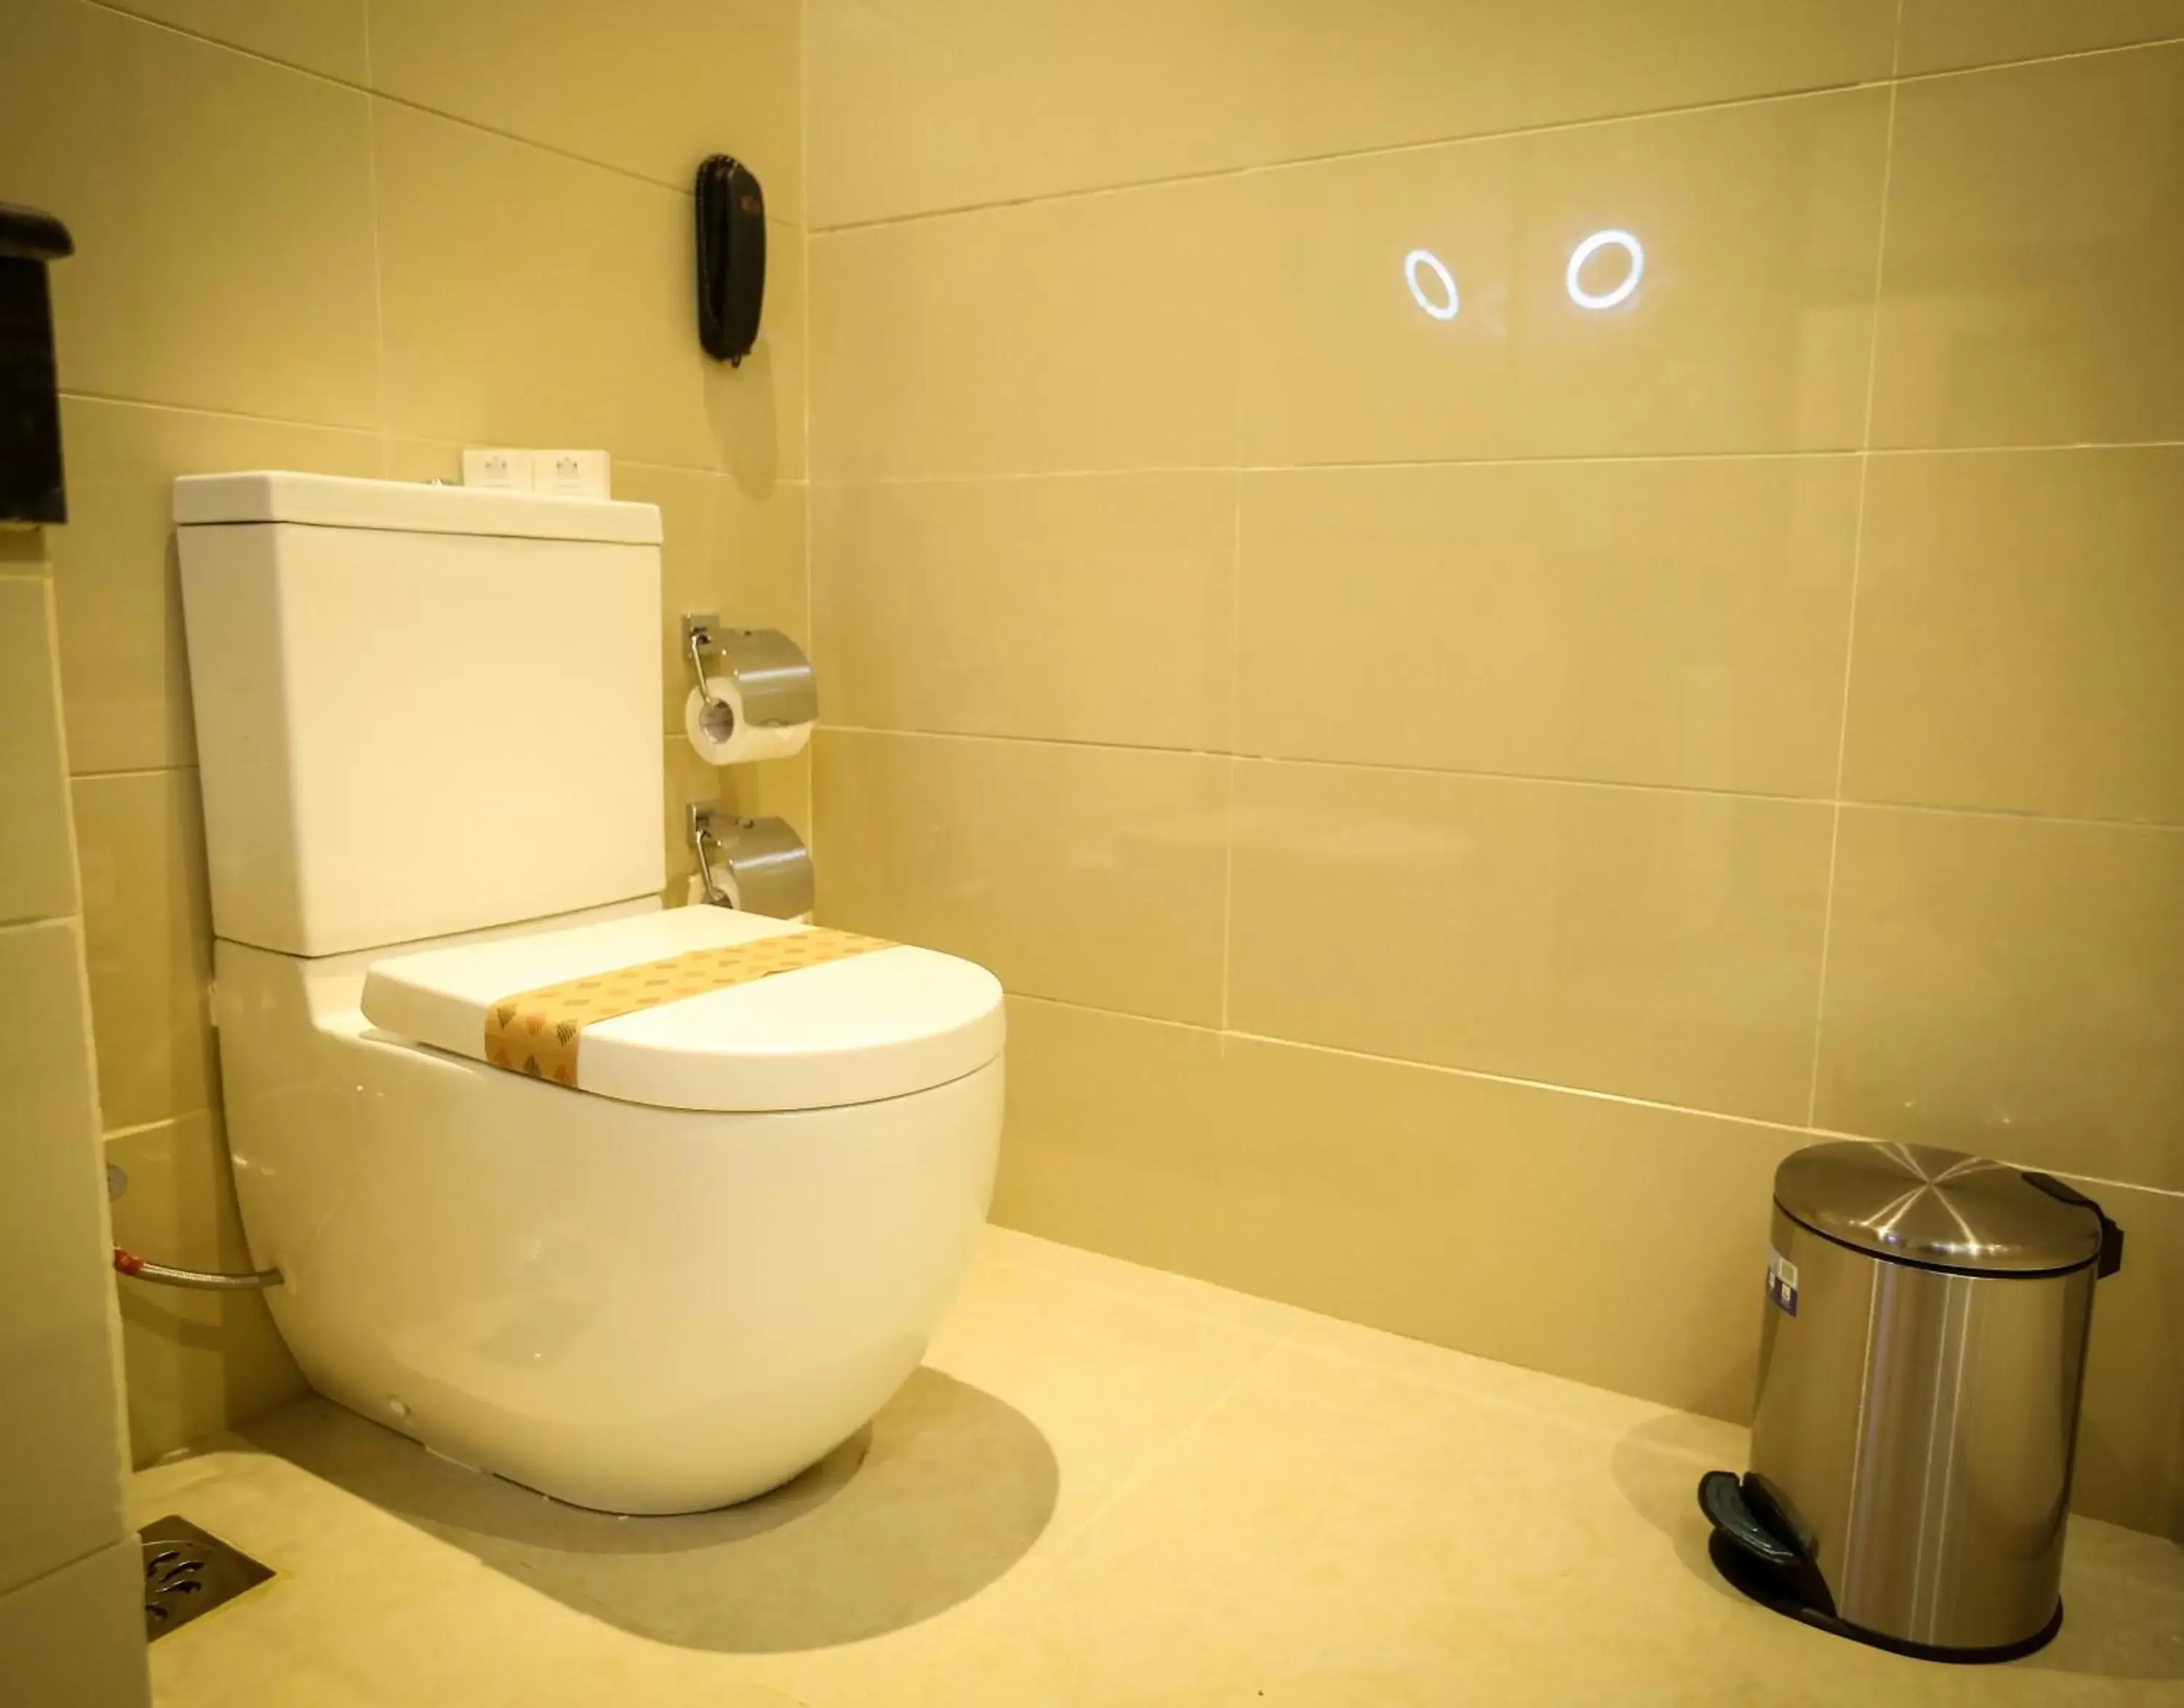 Toilet, Bathroom in The Golden Crown Hotel